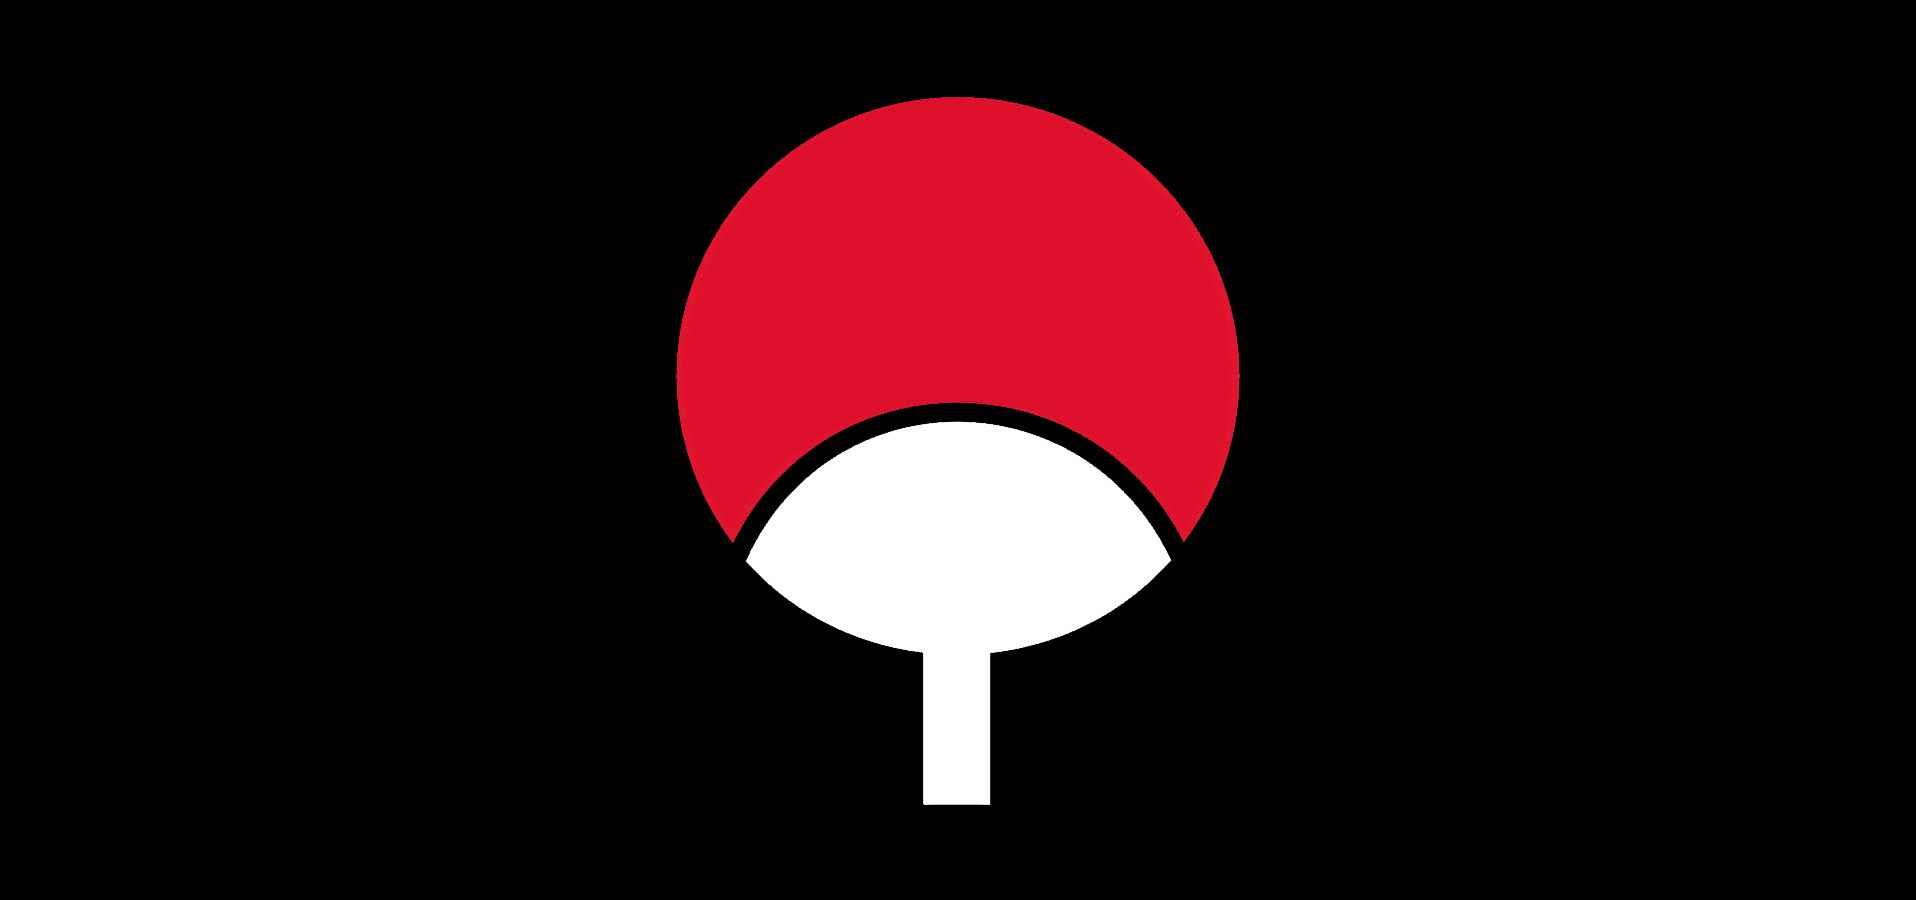 uchiha symbol wallpaper,rojo,diseño gráfico,ilustración,circulo,clipart